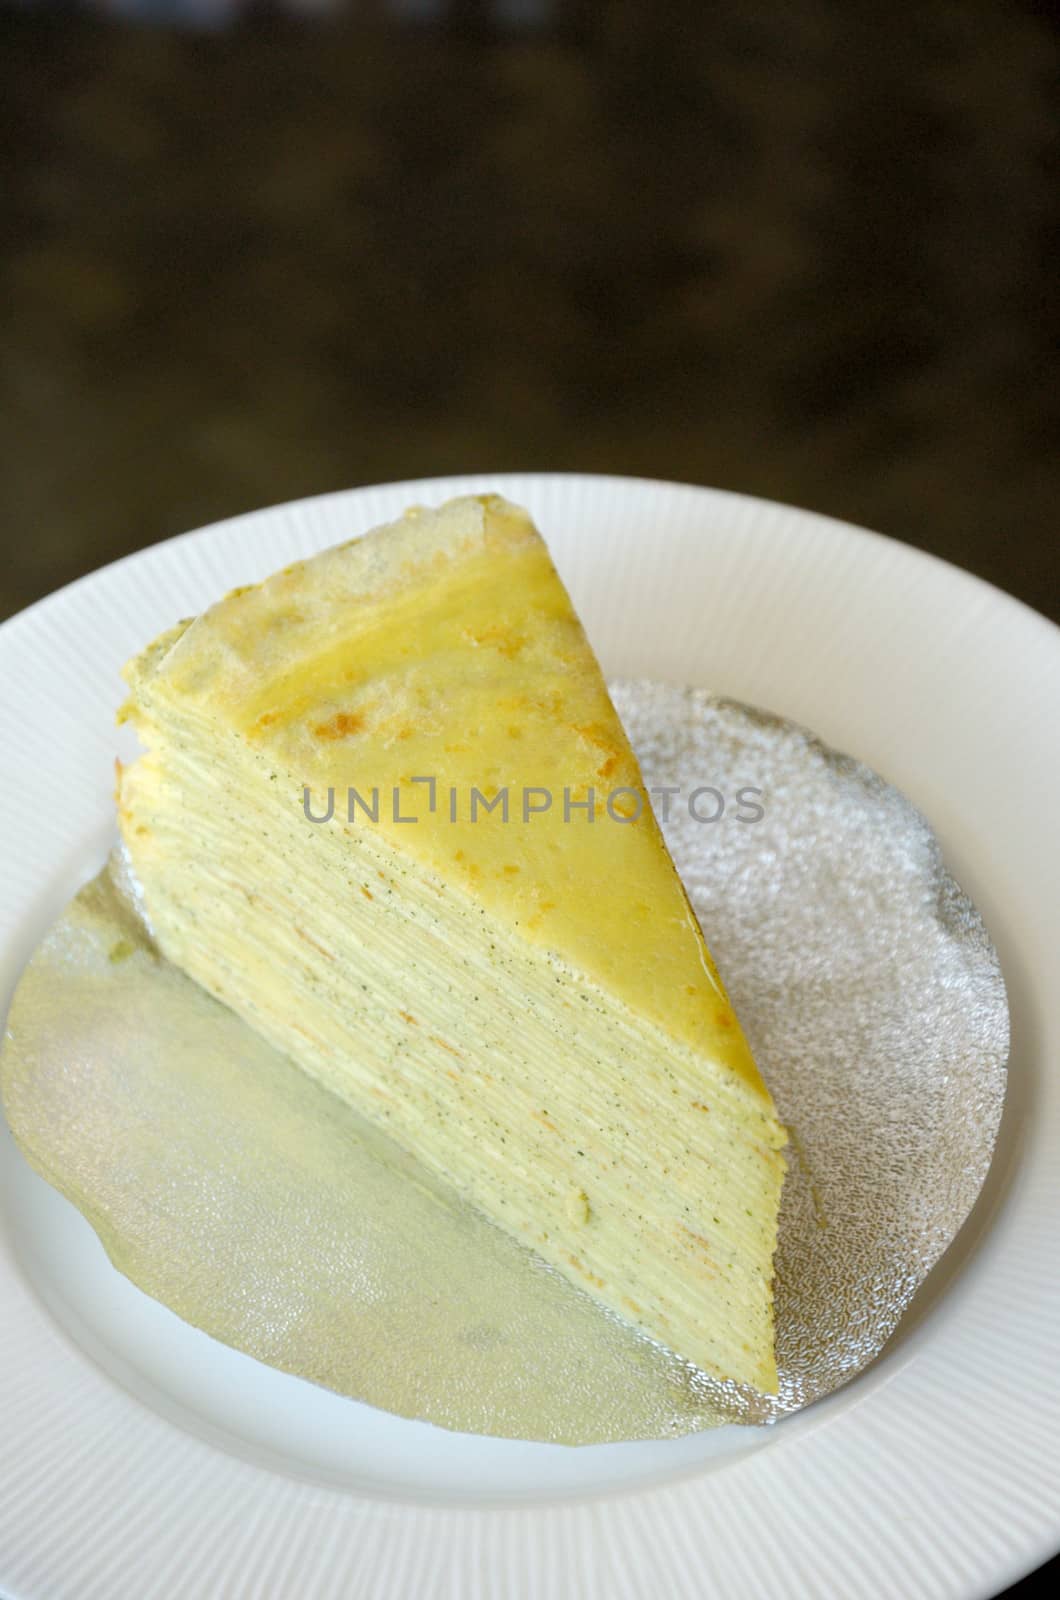 Crepe cake in white dishCrepe cake by pixbox77